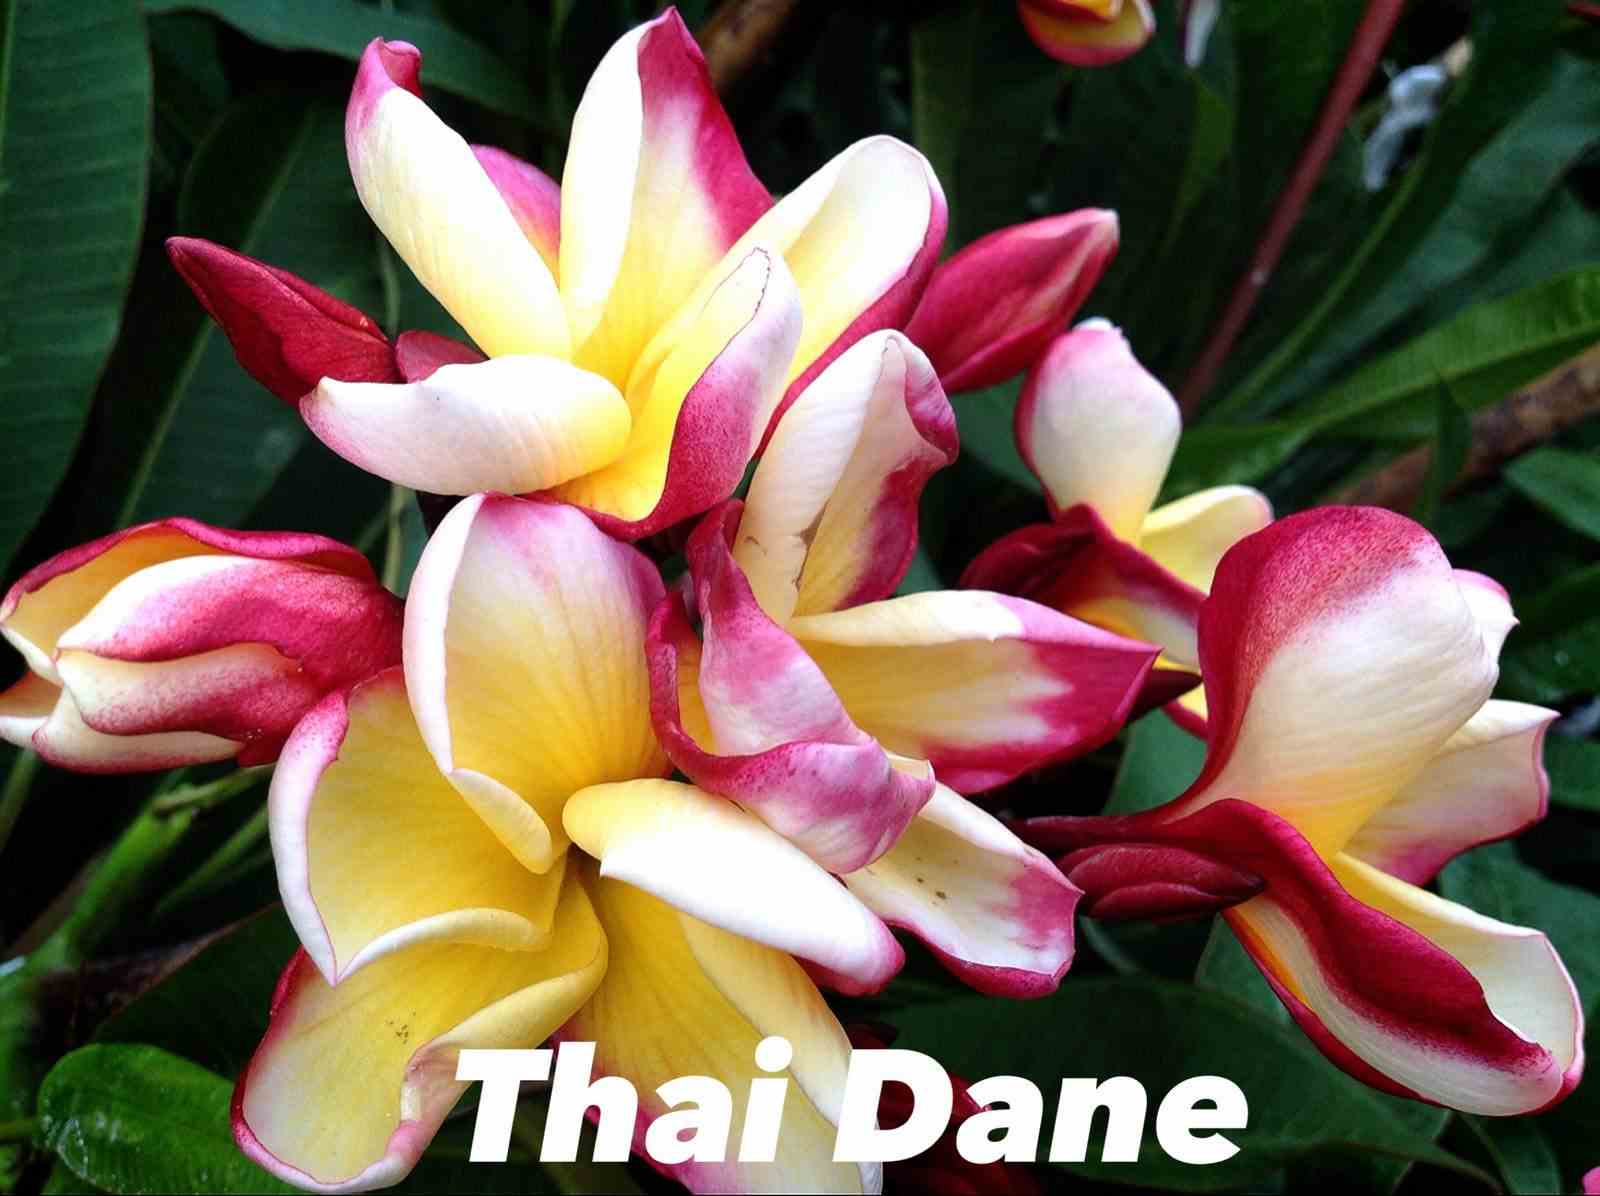 Plumeria rubra "thai dane" (frangipanier) taille pot de 2 litres ? 20/30 cm -   tricolor